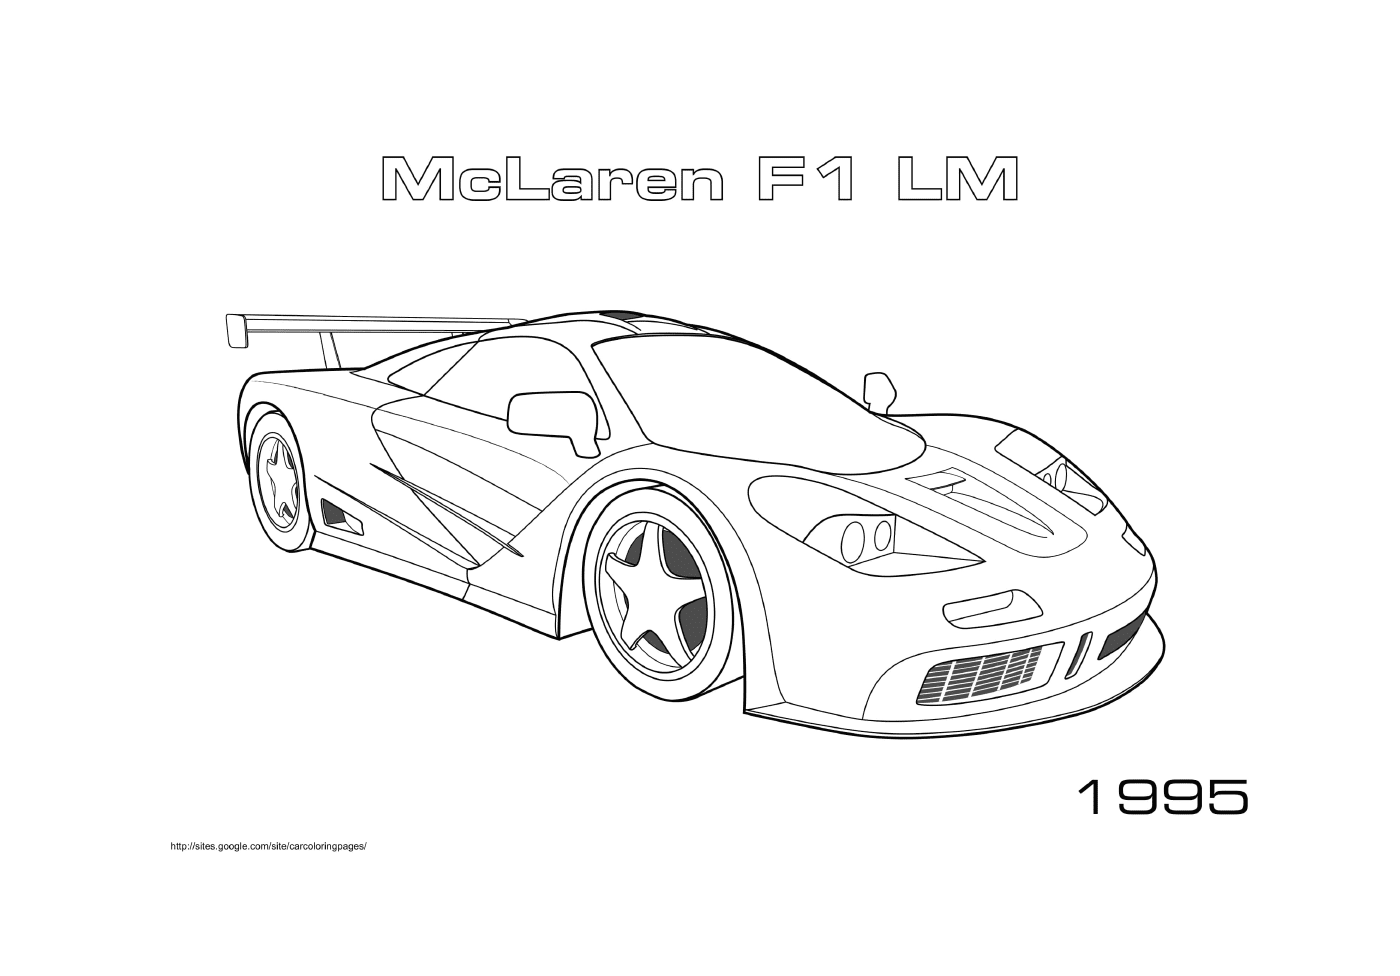   McLaren F1 Lm de 1995 